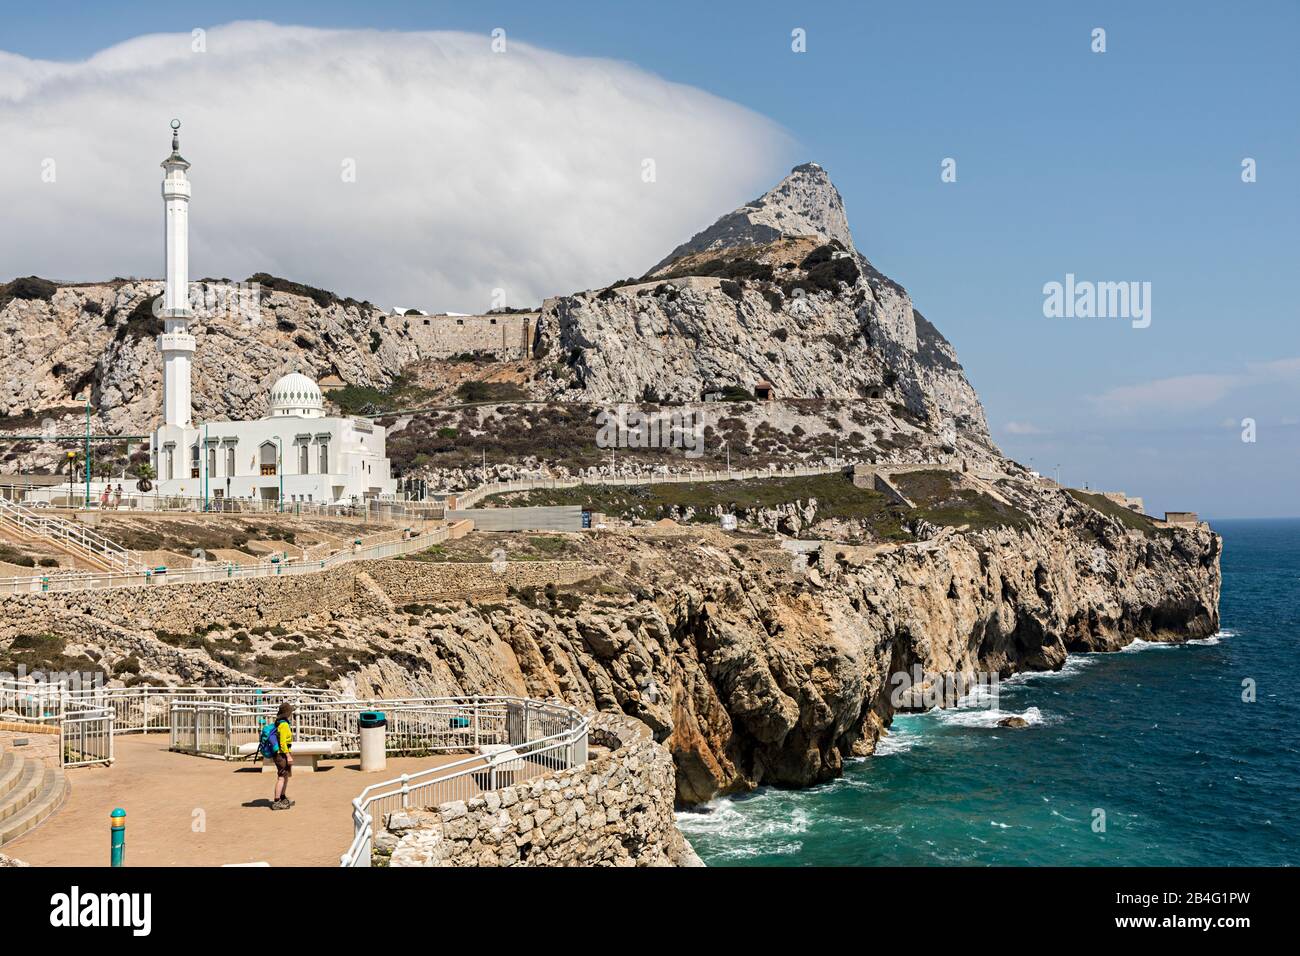 King Fahad bin Abdulaziz Al Saud Moschee, Europa Point, mit Felsen von Gibraltar und Levanter Wolke Stockfoto